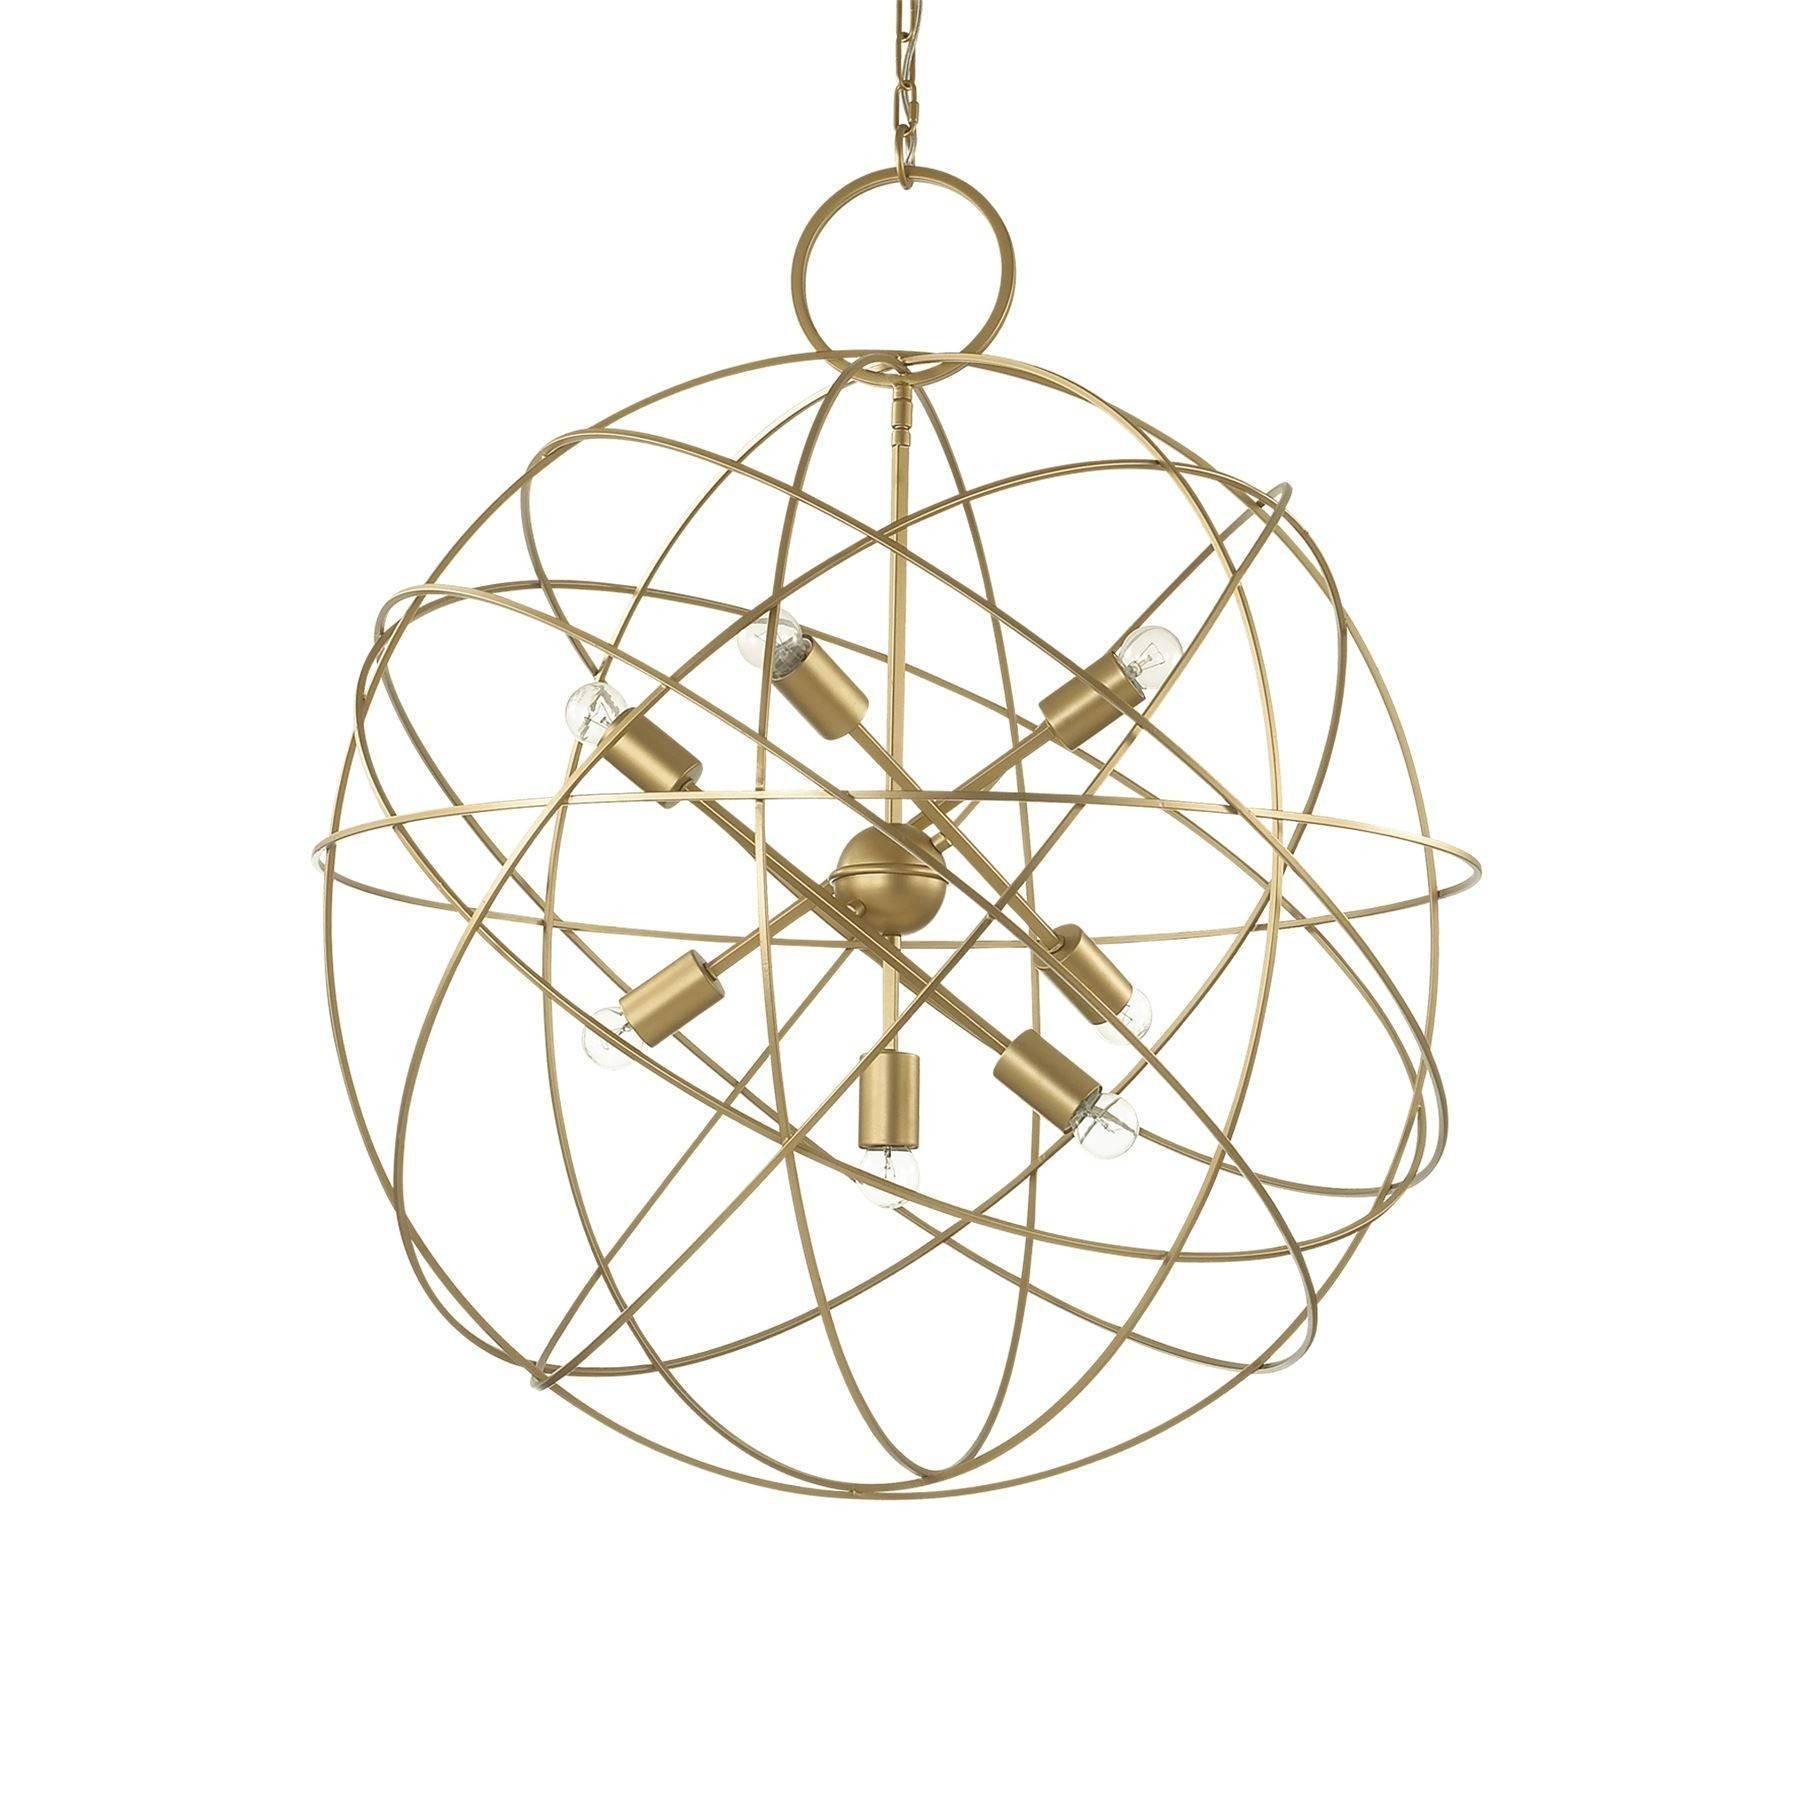 Konse 7 Light Spherical Ceiling Pendant Gold